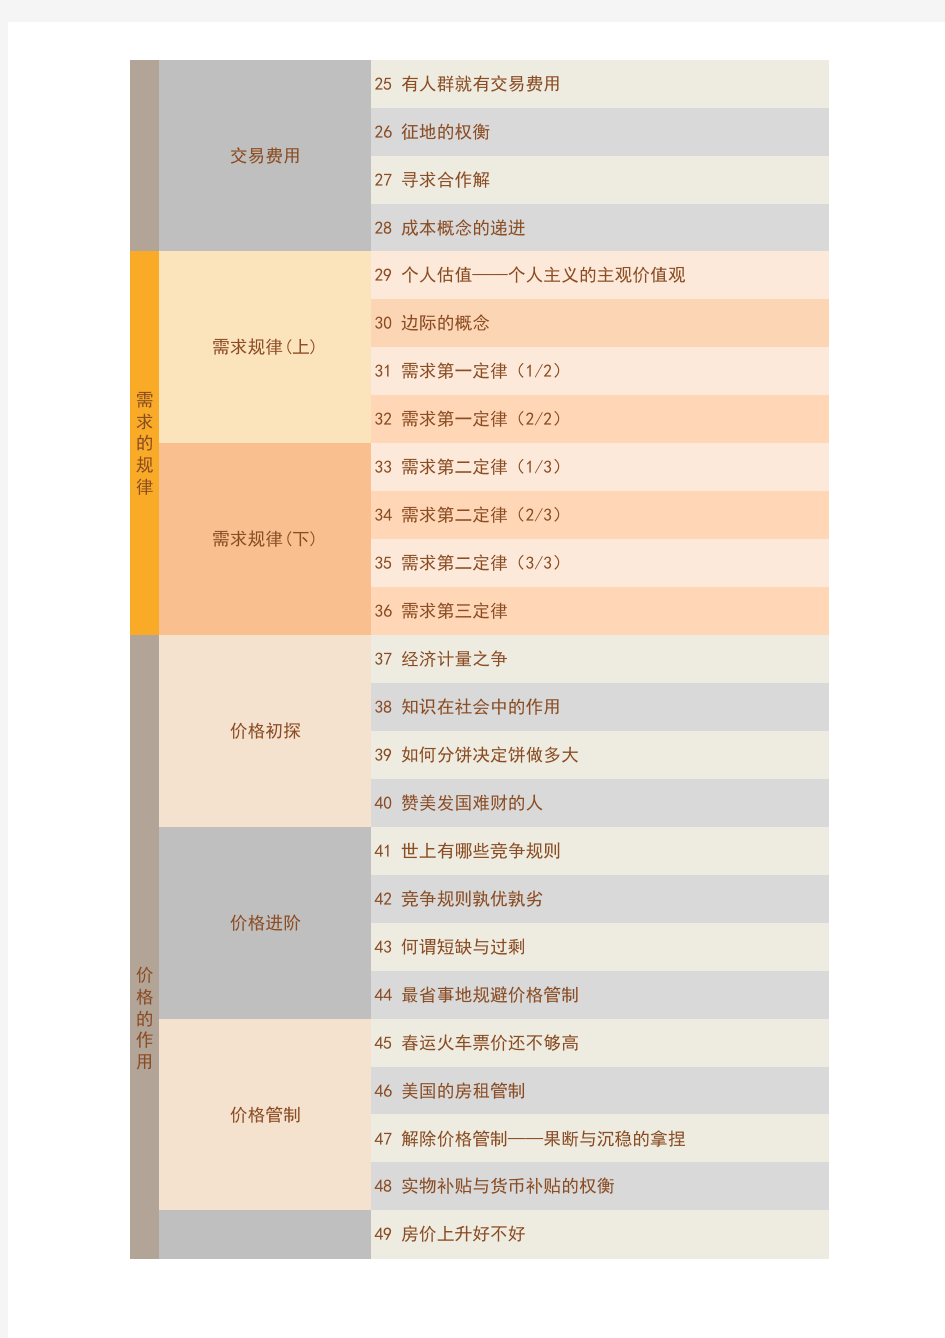 薛兆丰的北大经济学课程全年课表(PDF版)